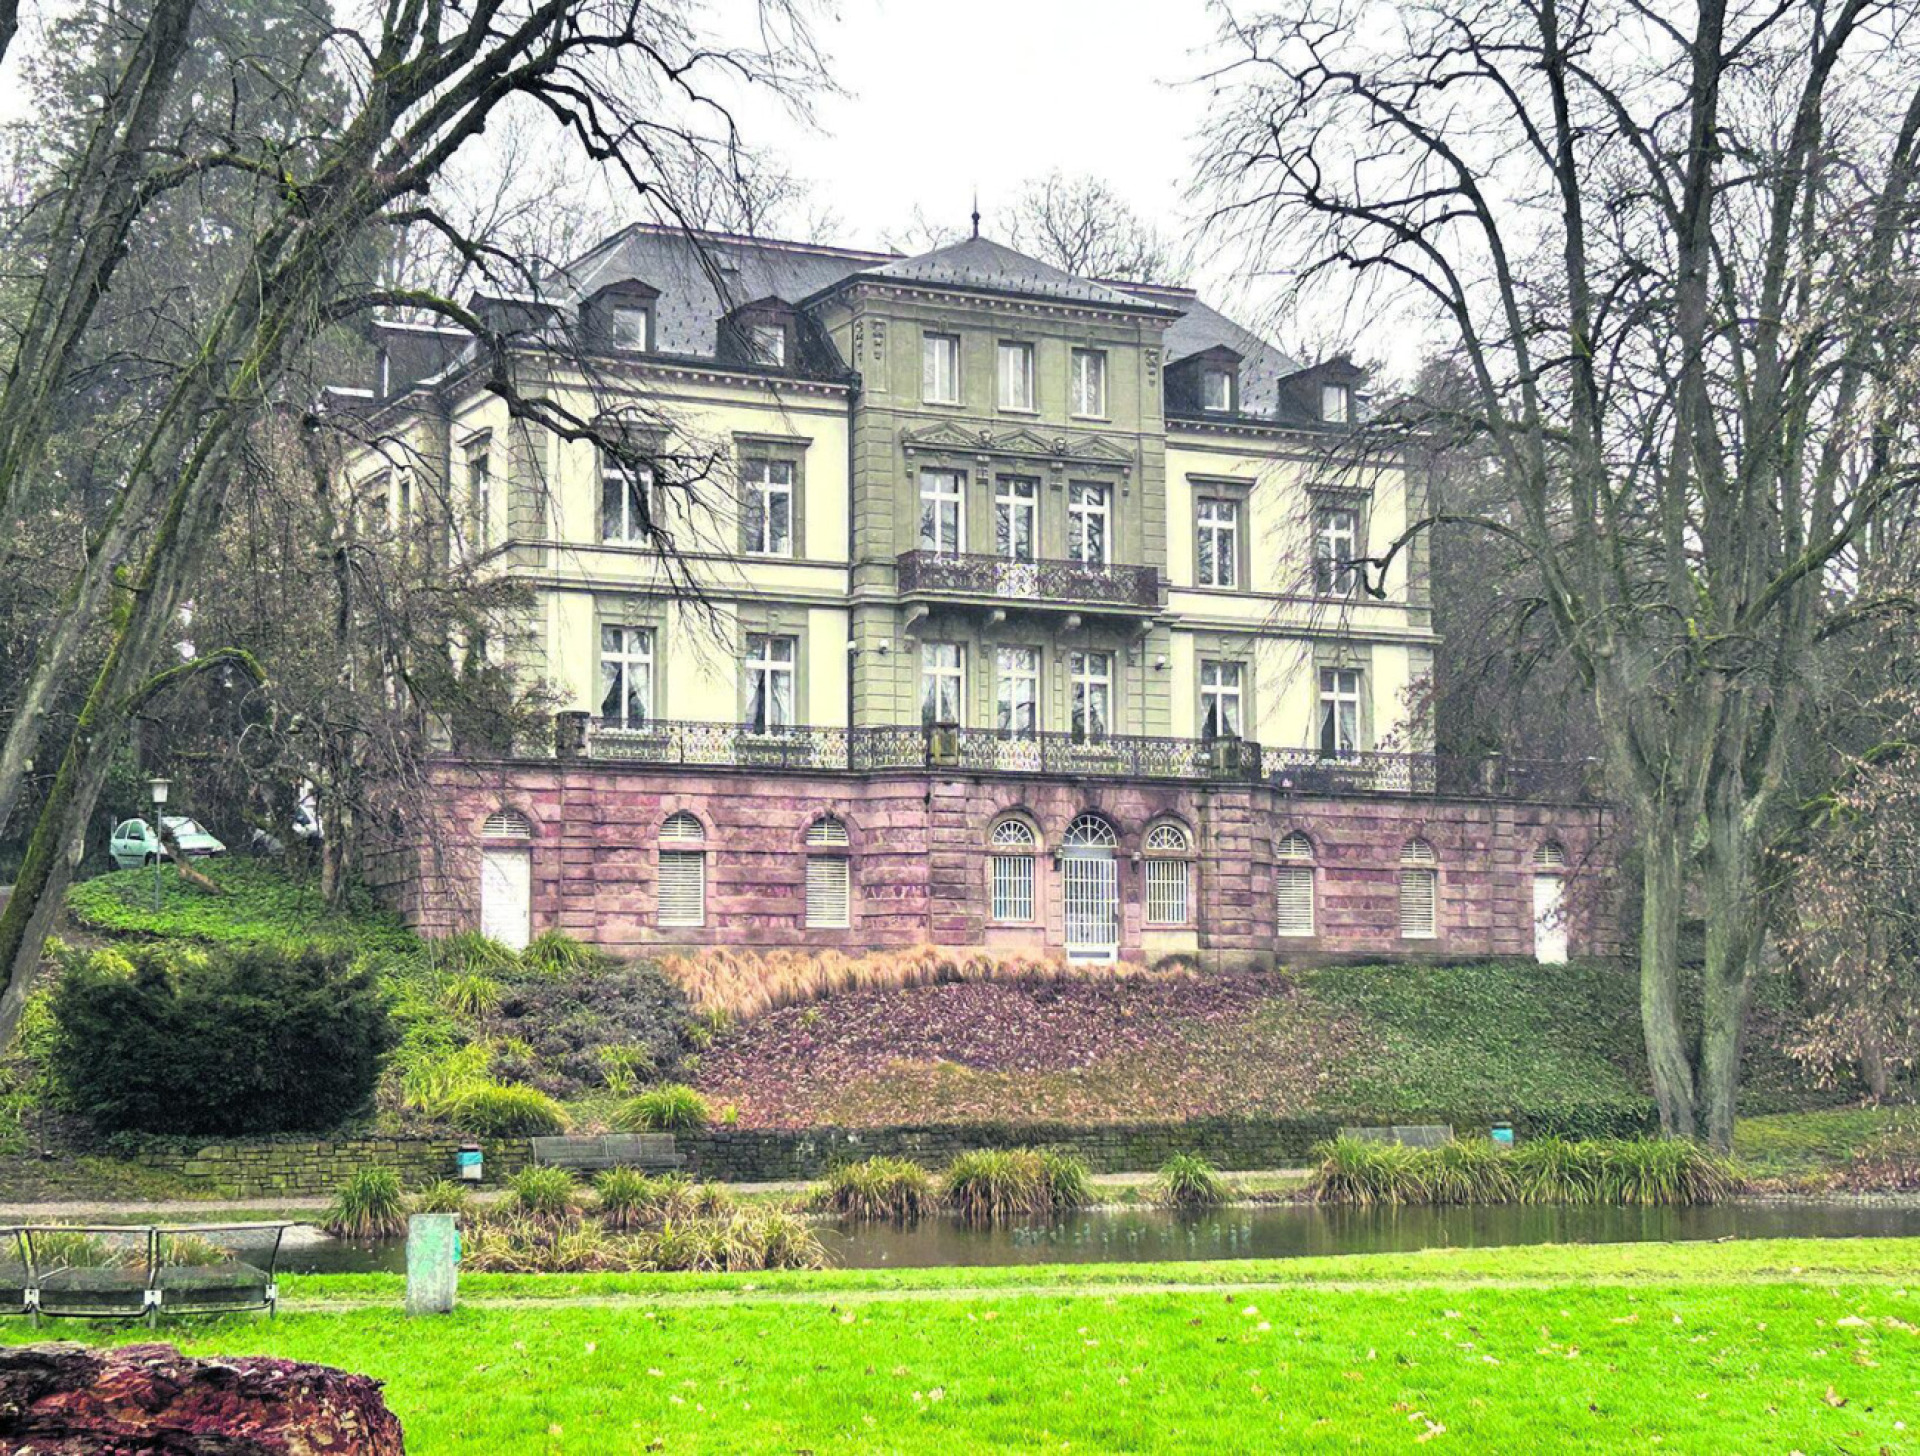 Die Villa Berberich, das Kulturhaus der Stadt Bad Säckingen, ist ein Ort für Ausstellungen, Kurse, Museen und Sammlungen sowie für Vereine. Foto: Charlotte Fröse